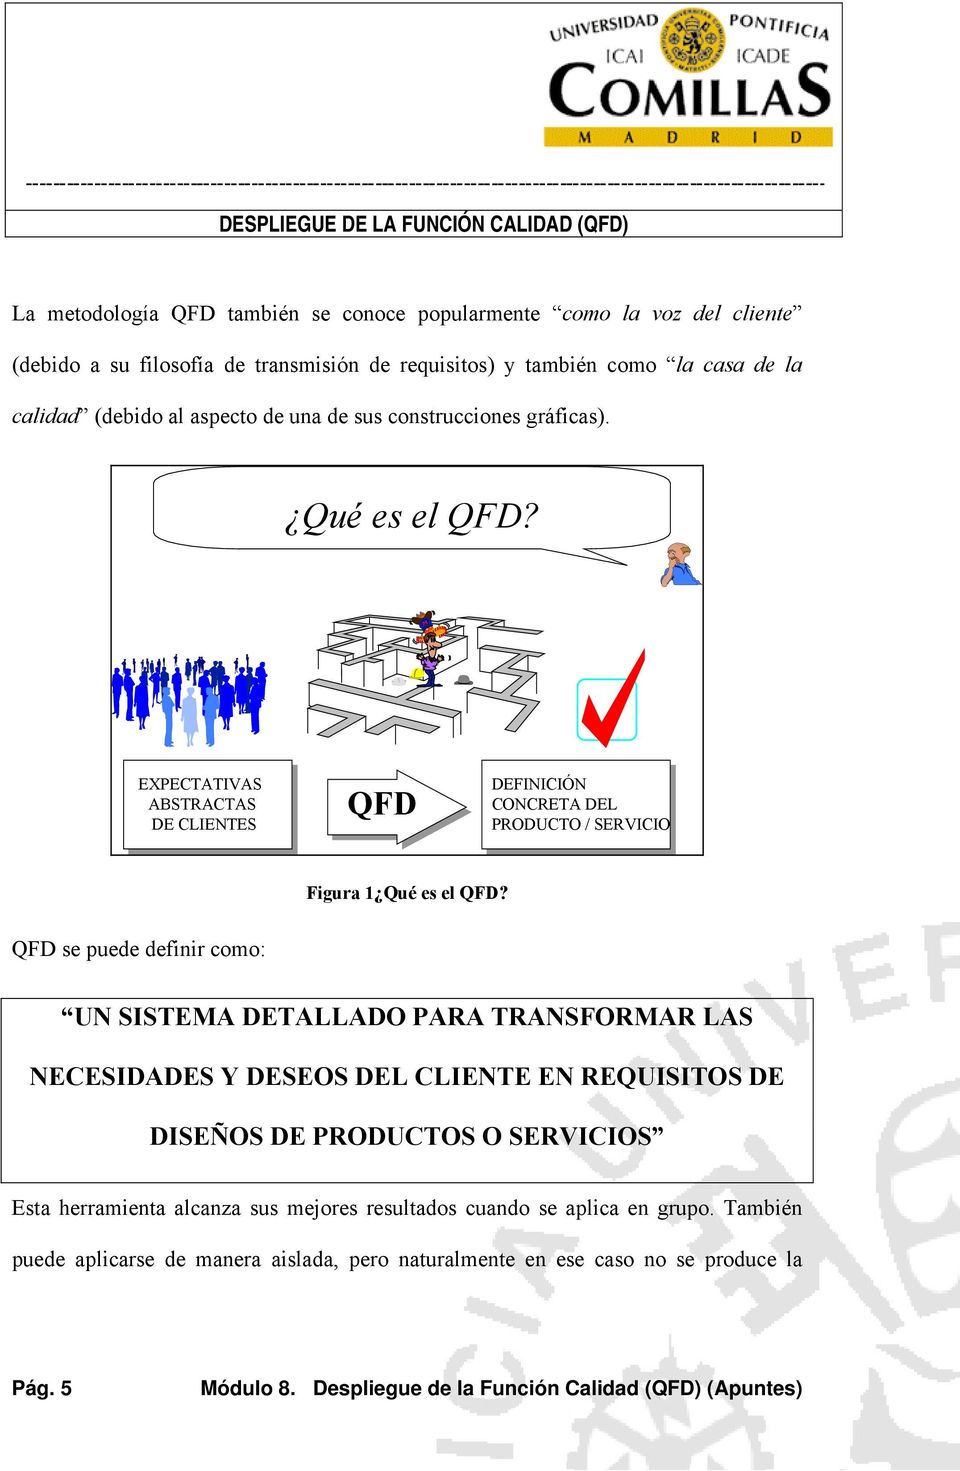 EXPECTATIVAS ABSTRACTAS DE CLIENTES QFD DEFINICIÓN CONCRETA DEL PRODUCTO / SERVICIO Figura 1 Qué es el QFD?